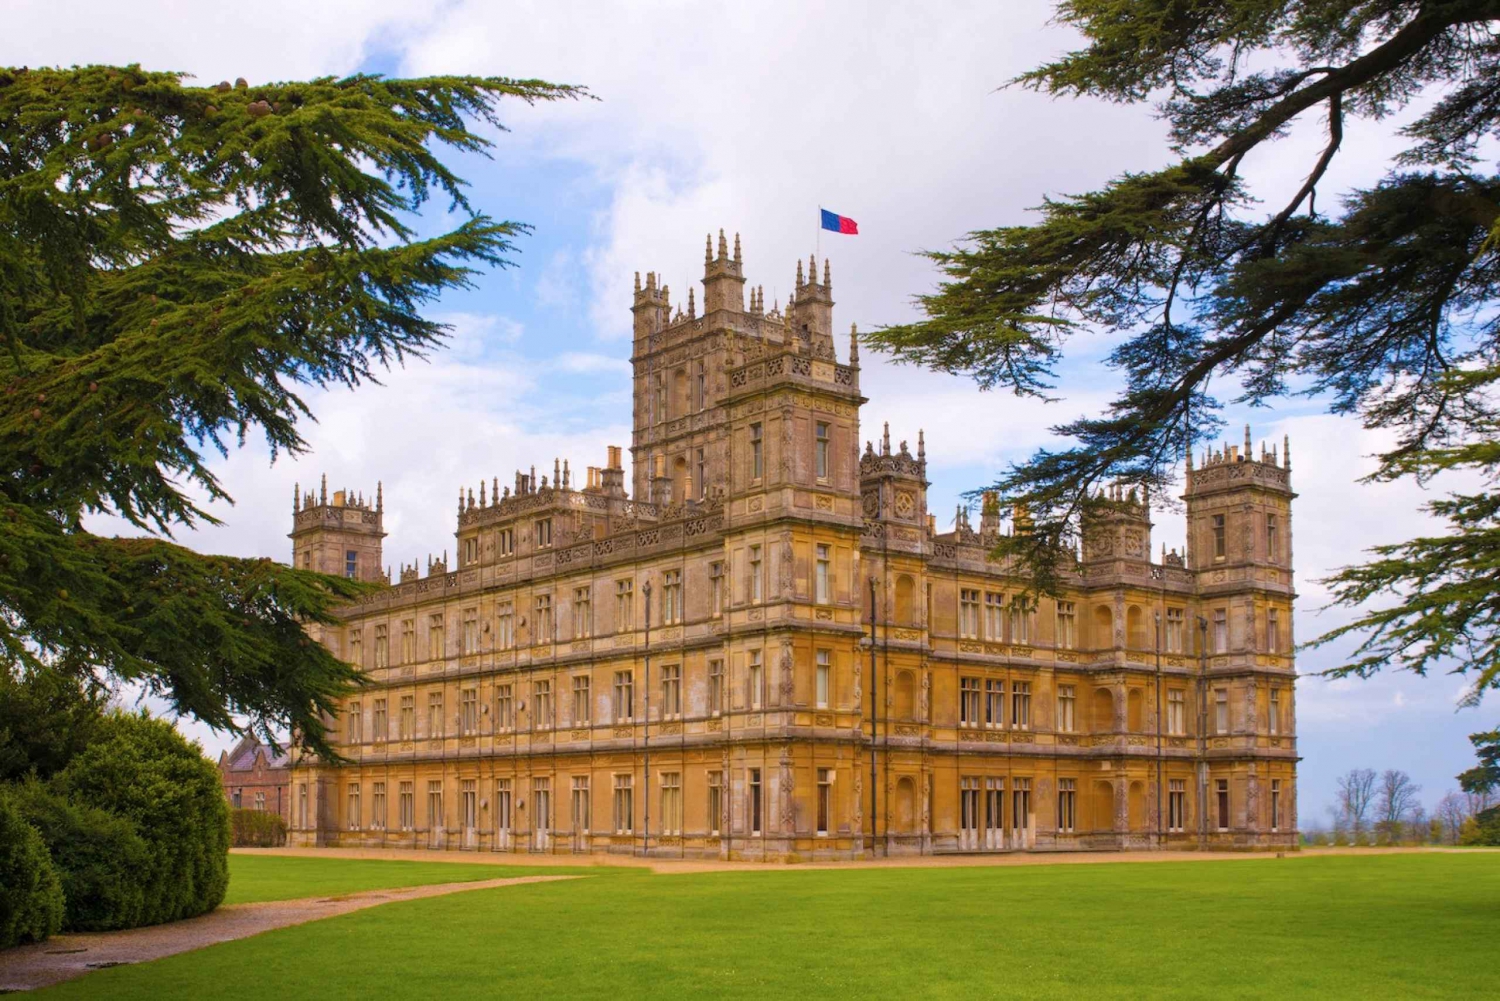 Downton Abbey opnamelocaties & Highclere Castle Tour